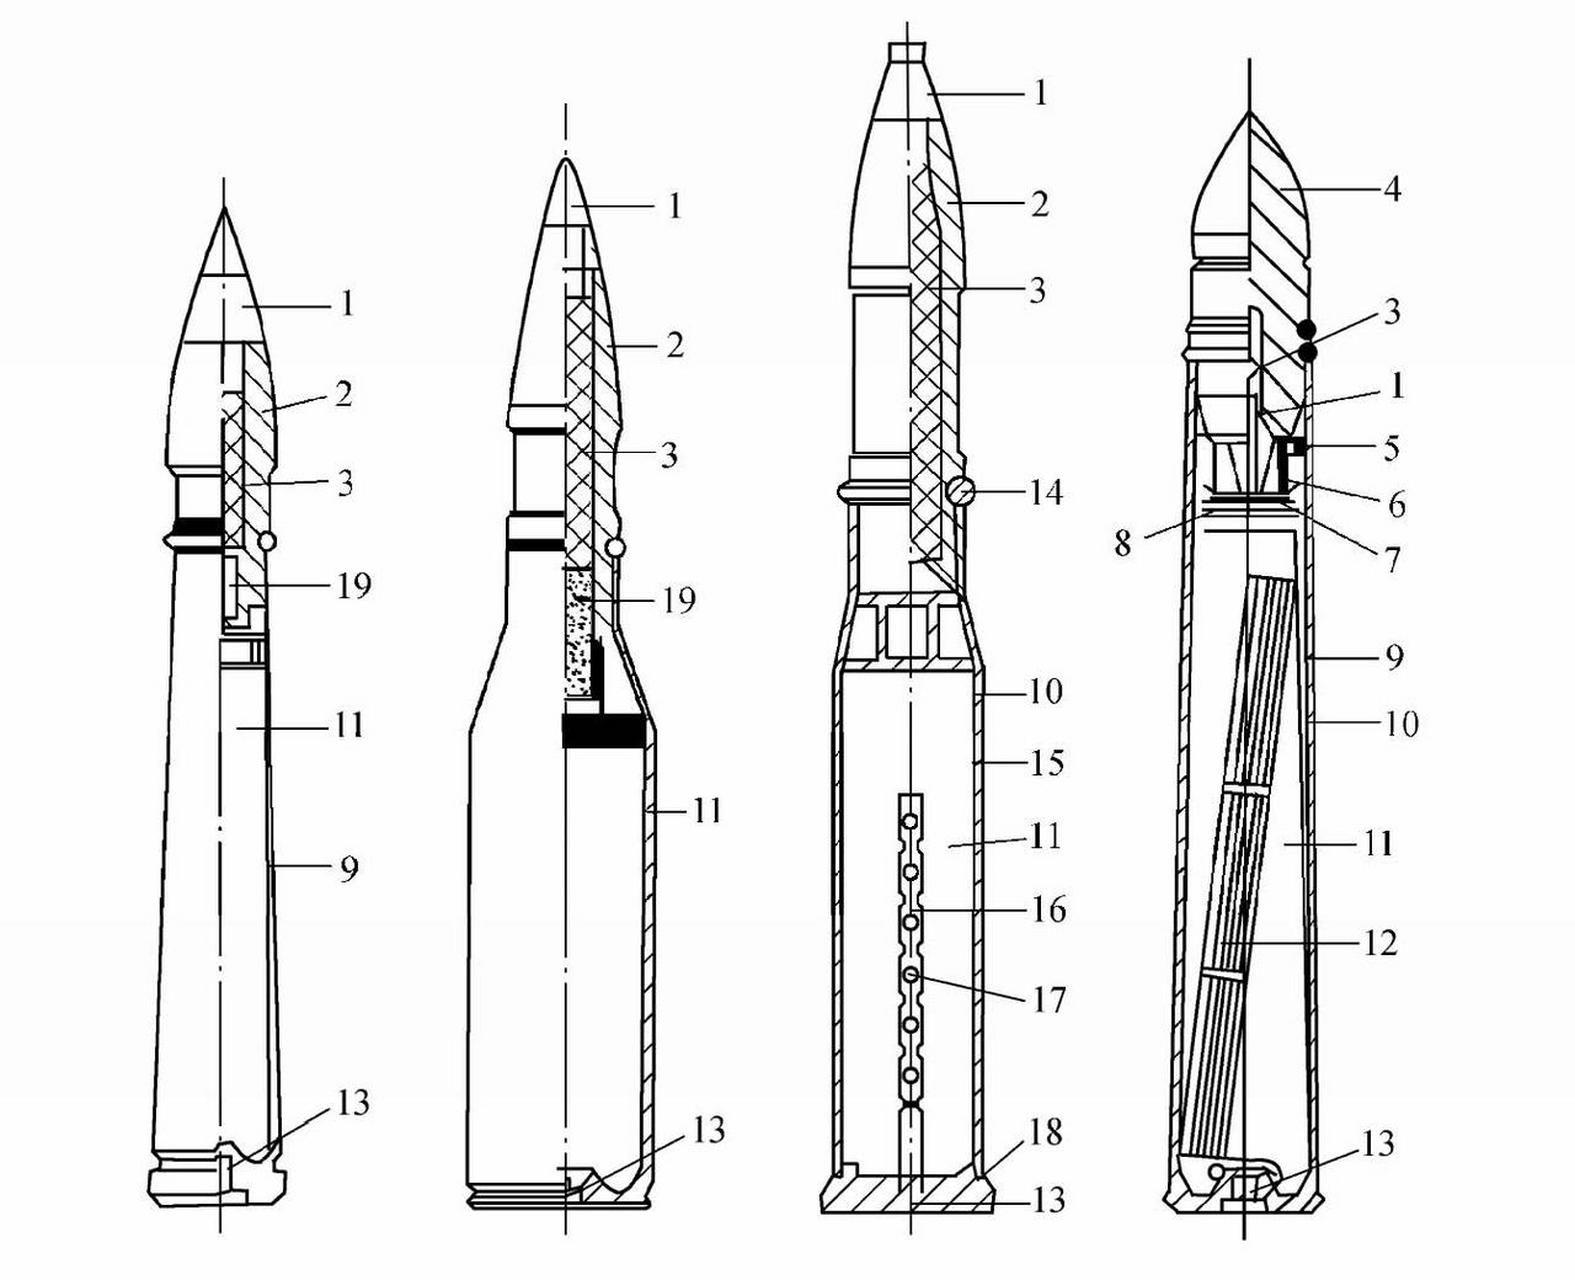 炮弹的组成 炮弹是供火炮发射的弹药,依靠炮膛内火药燃气压力推动弹丸